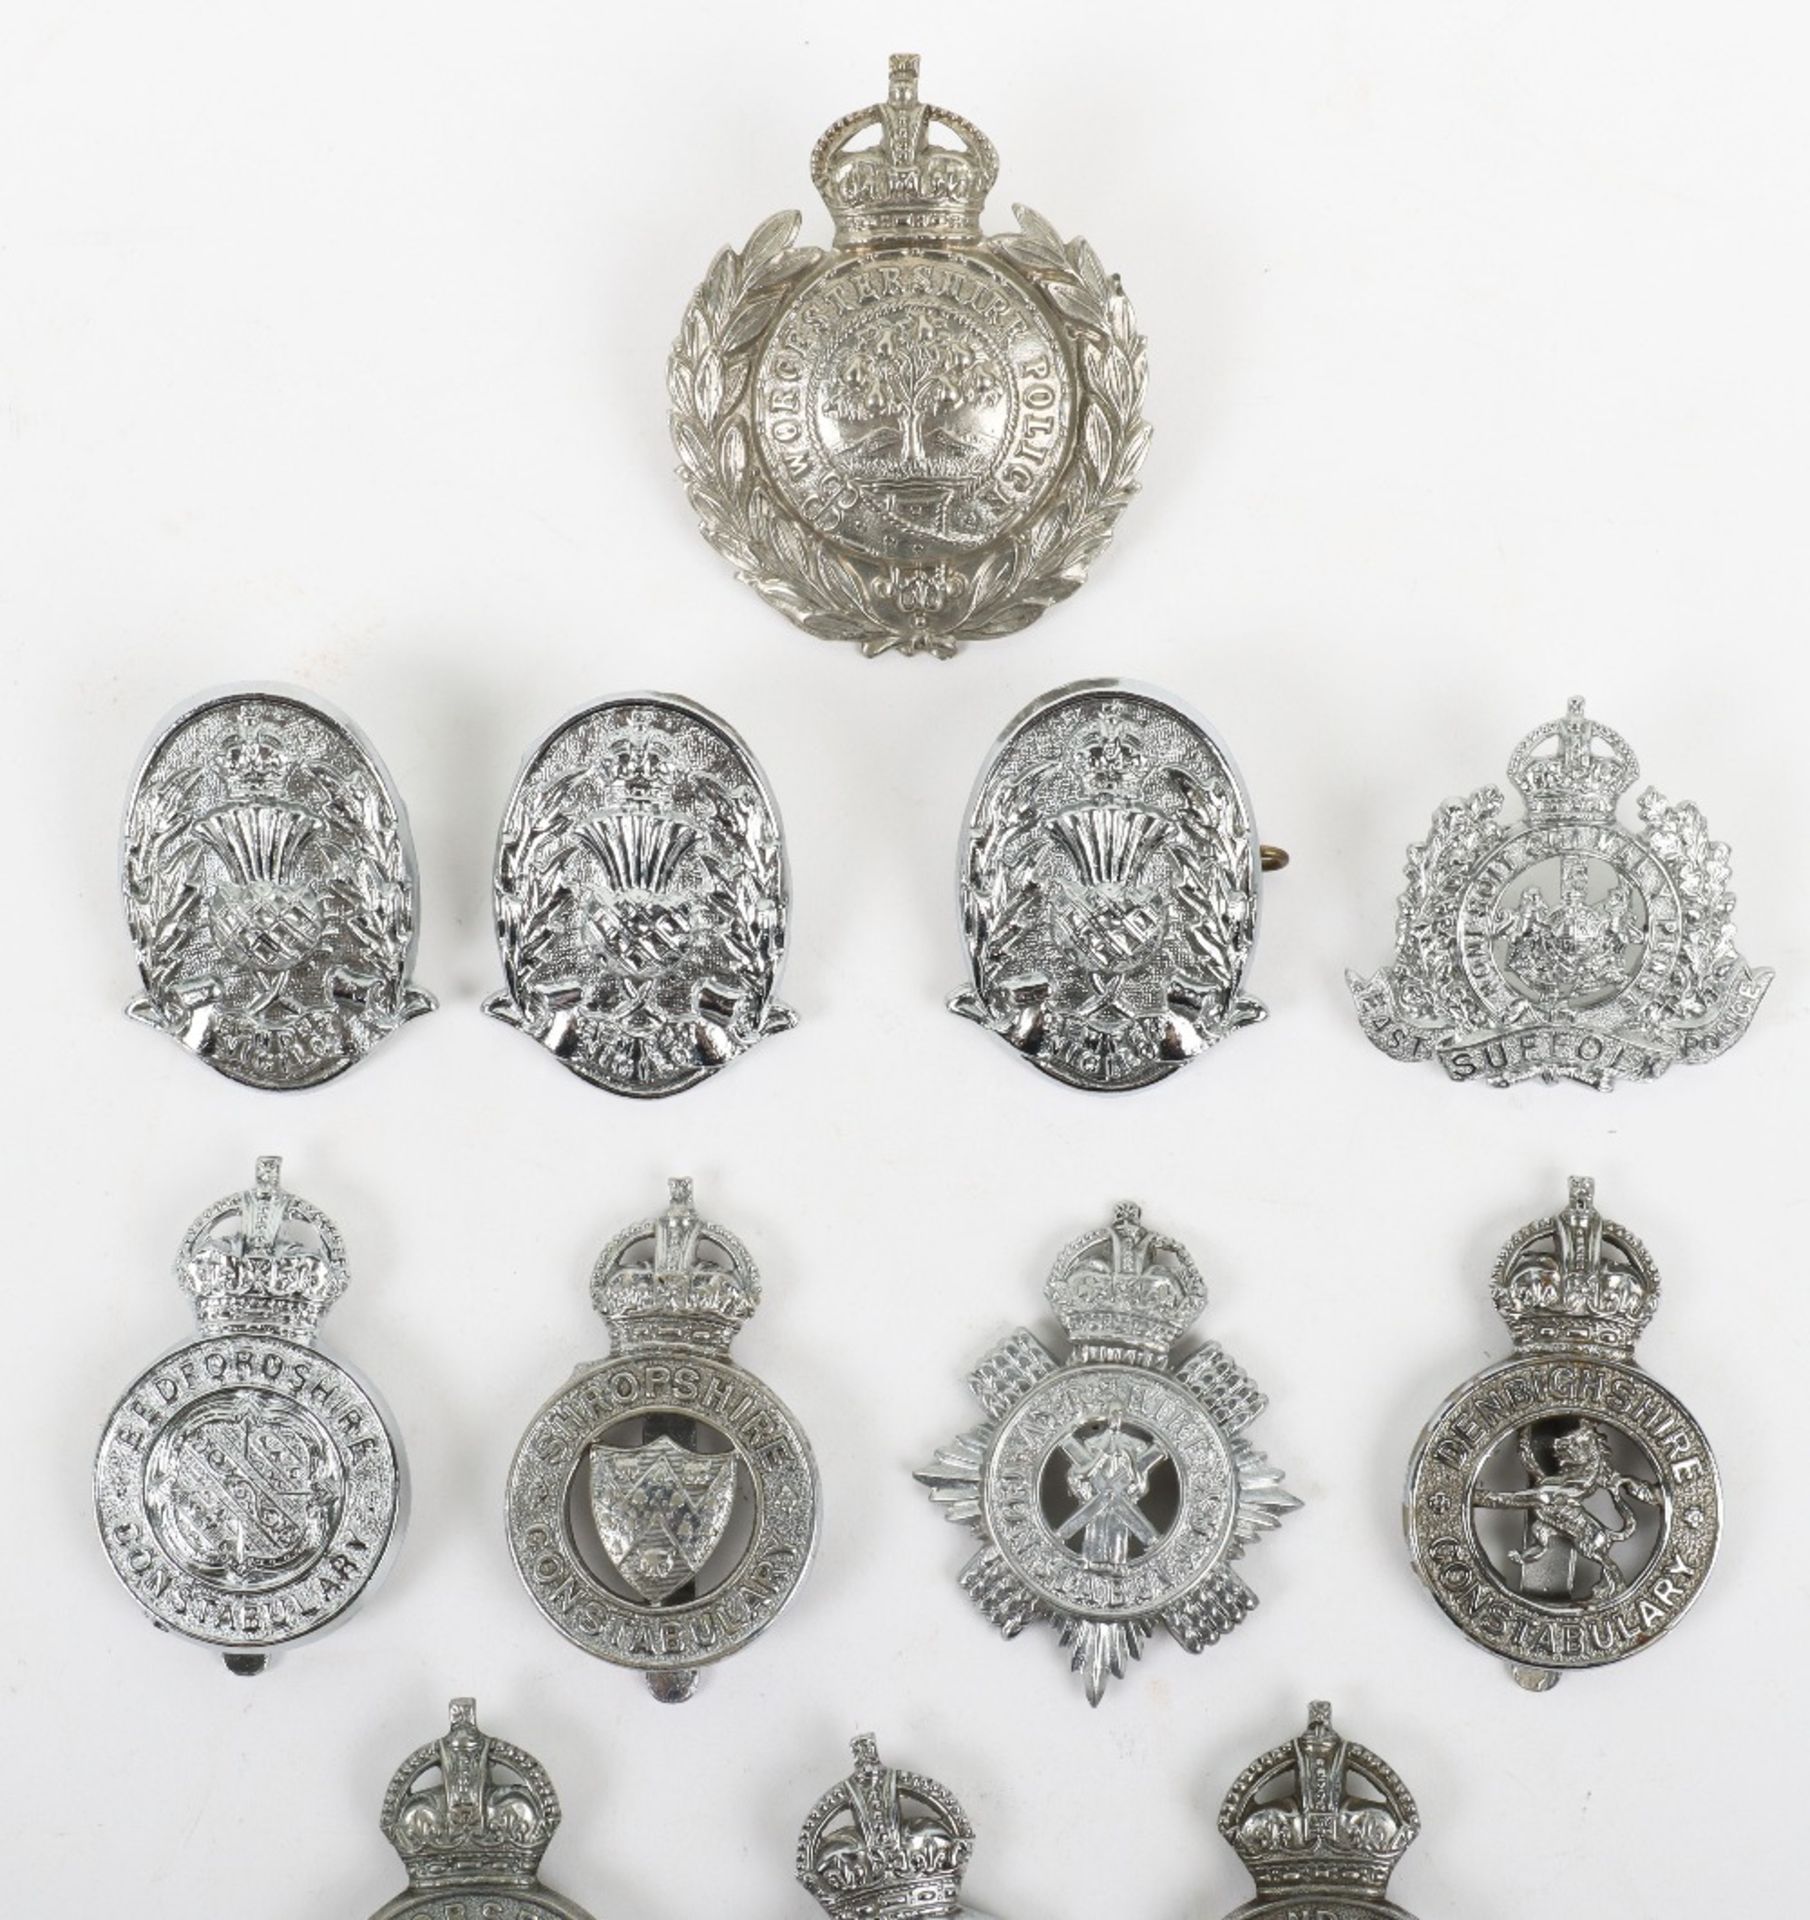 Fifteen Kings Crown Police Cap Badges - Image 2 of 4